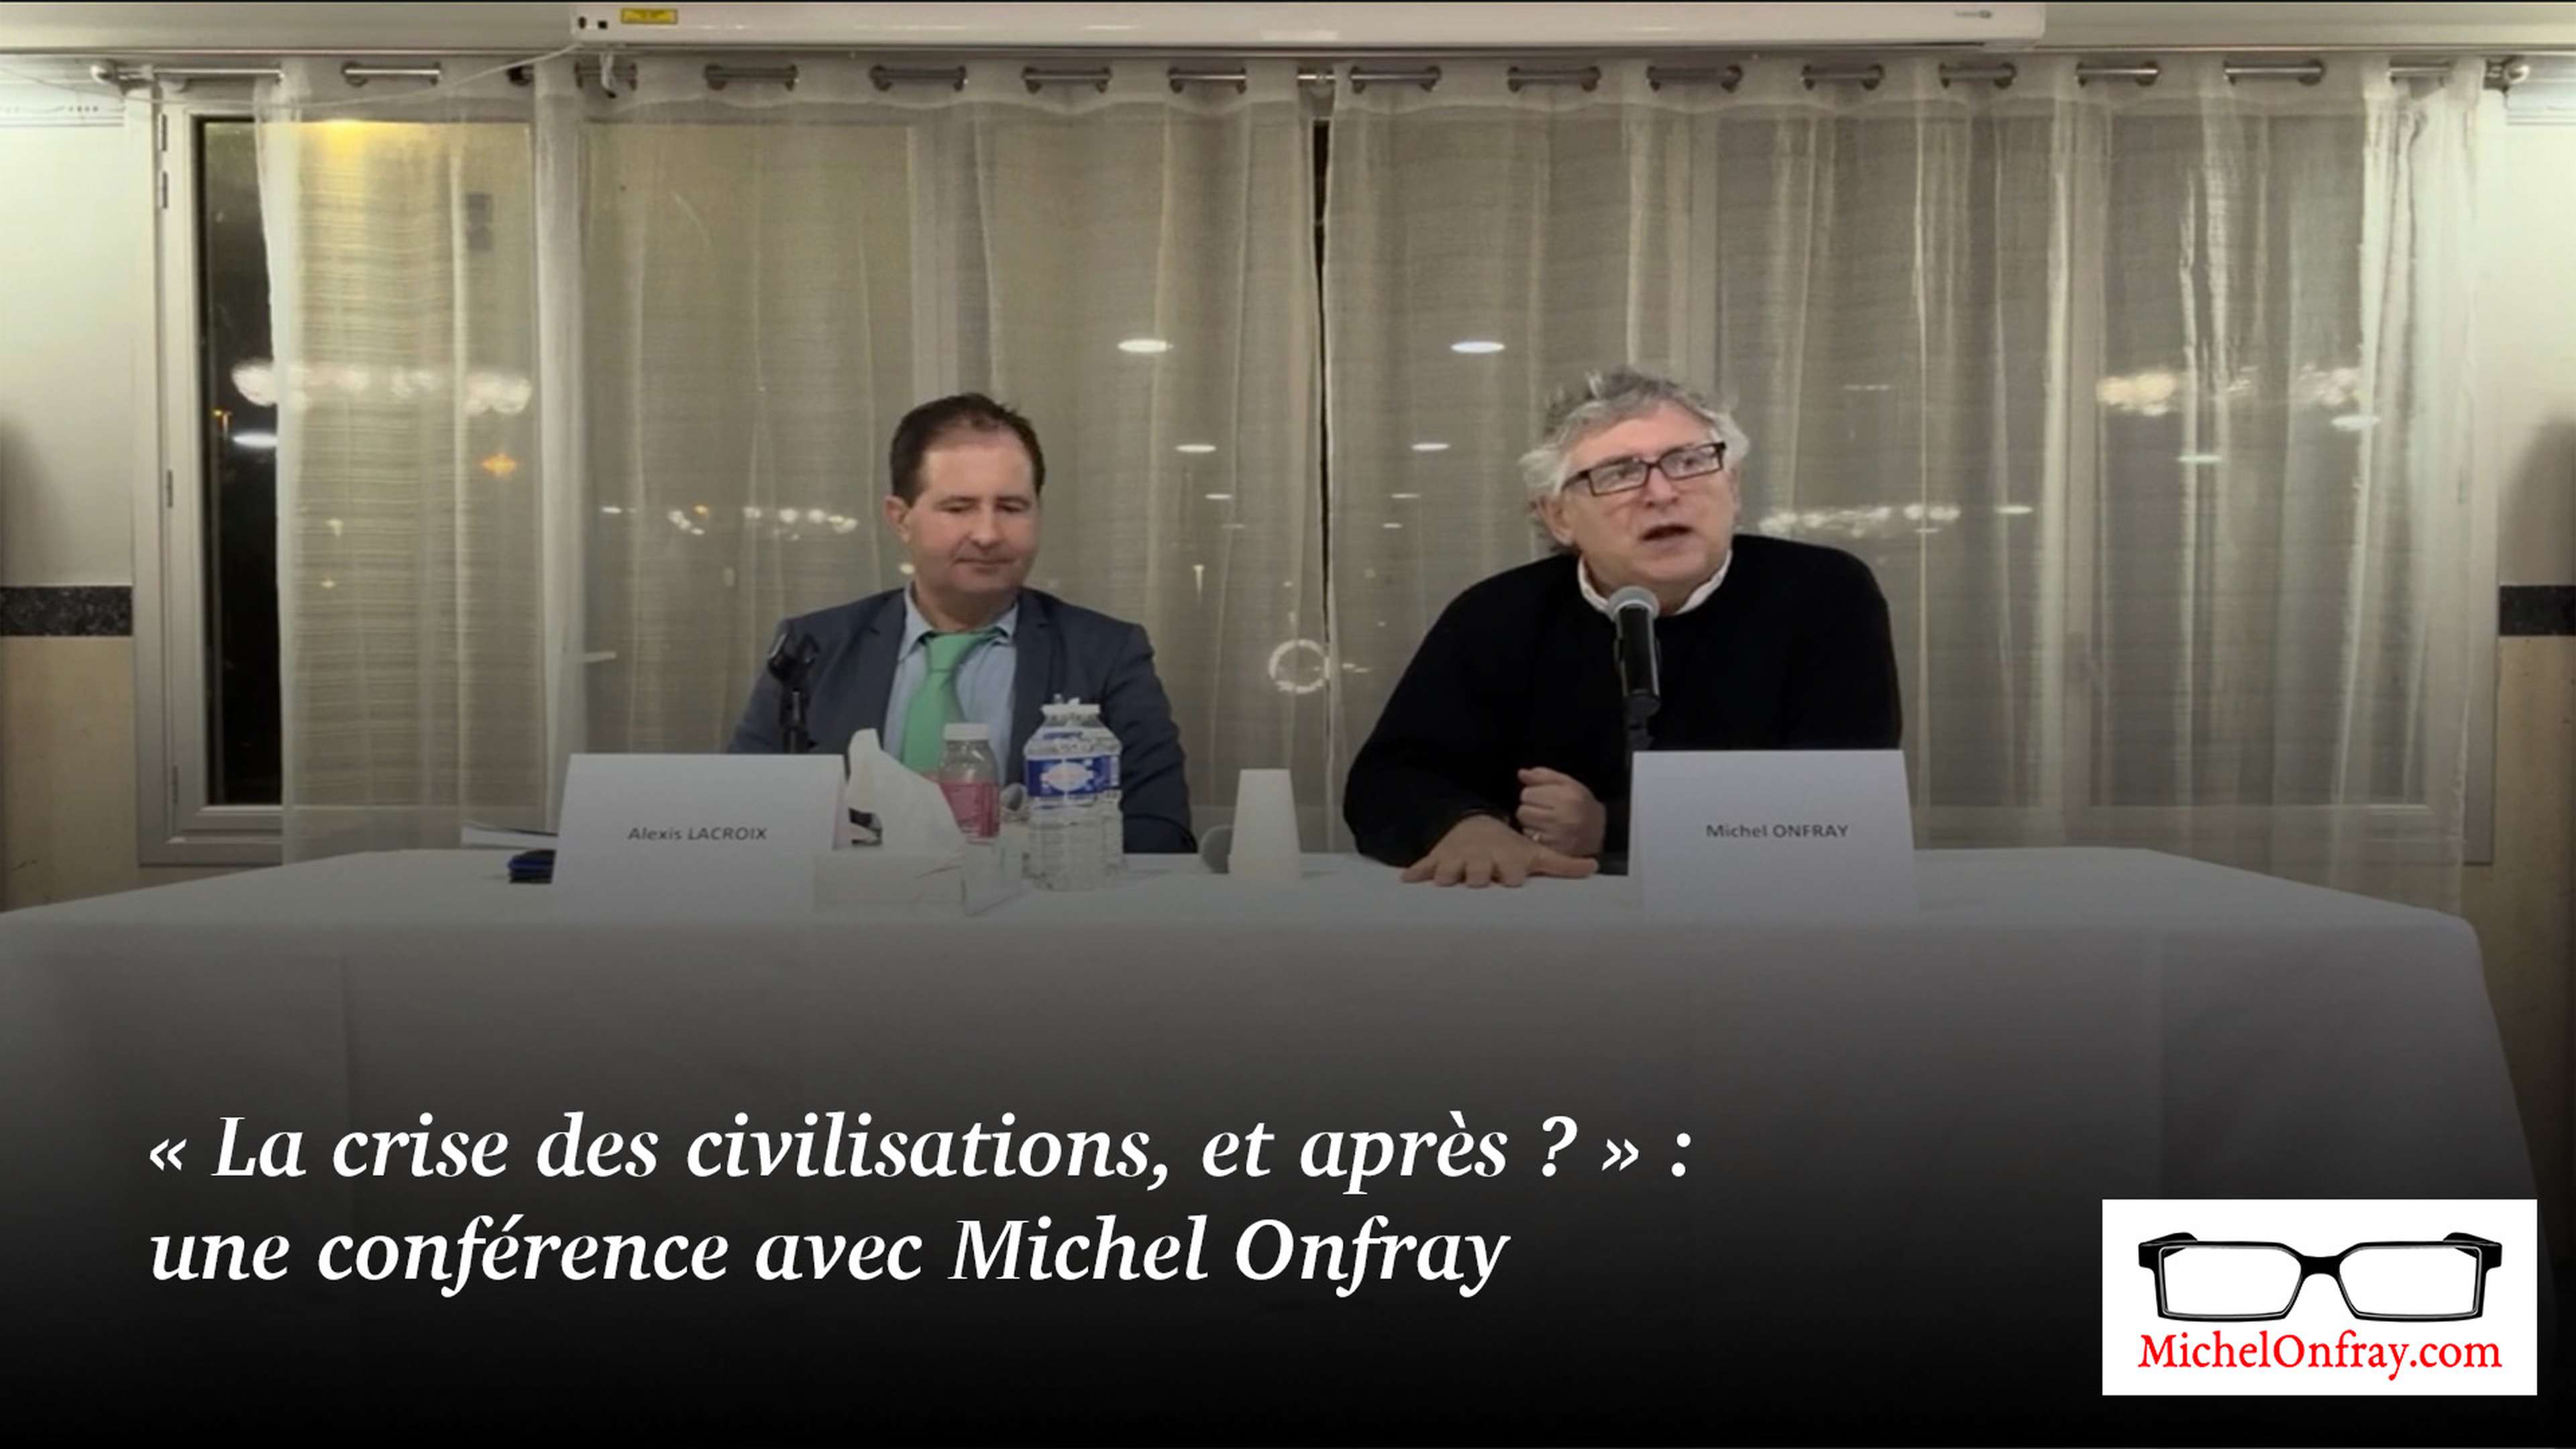 « La crise des civilisations, et après ? » : une conférence avec Michel Onfray